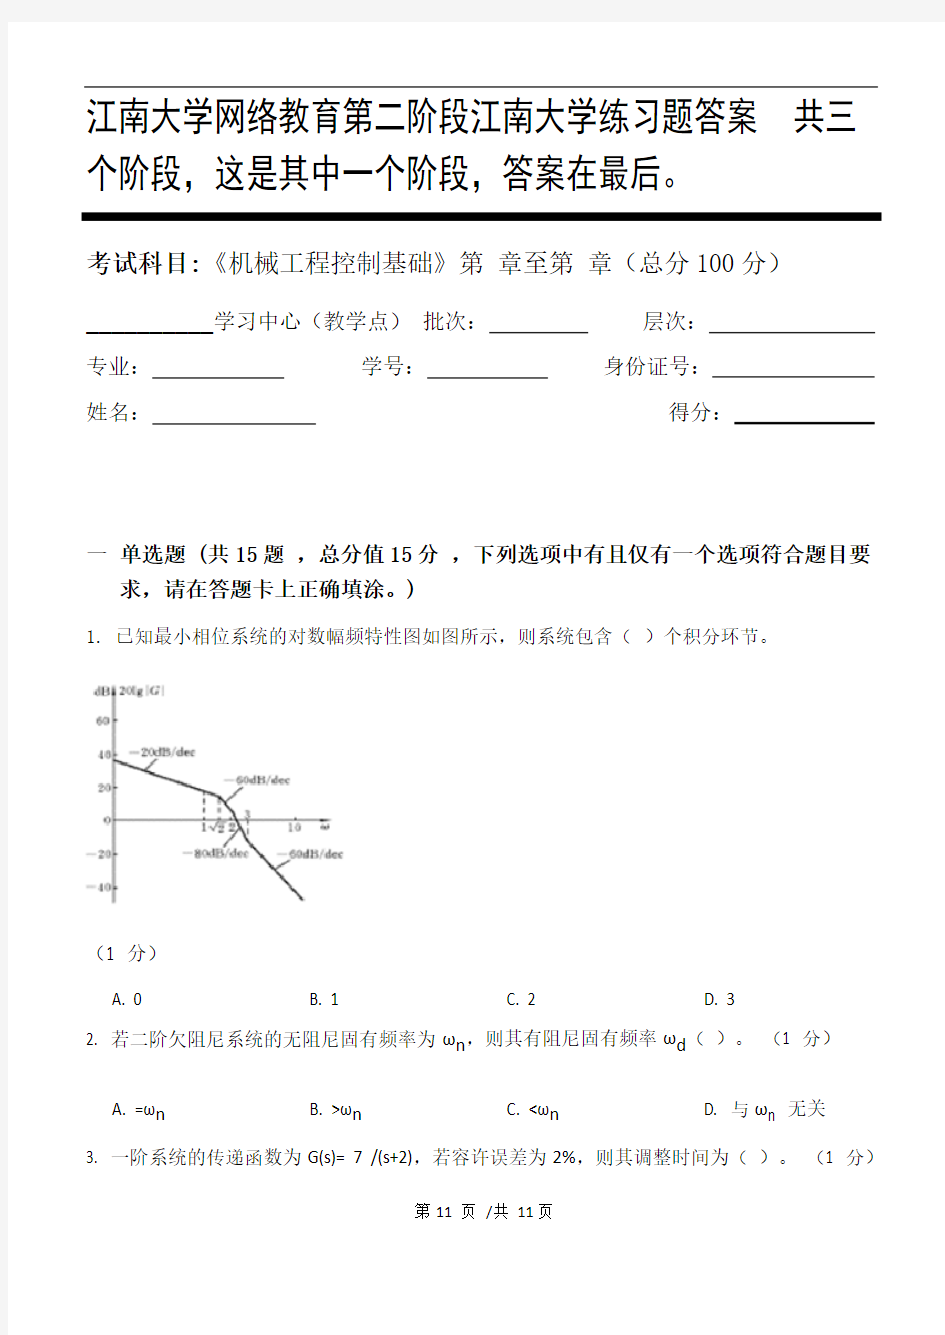 机械工程控制基础第2阶段江南大学练习题答案  共三个阶段,这是其中一个阶段,答案在最后。